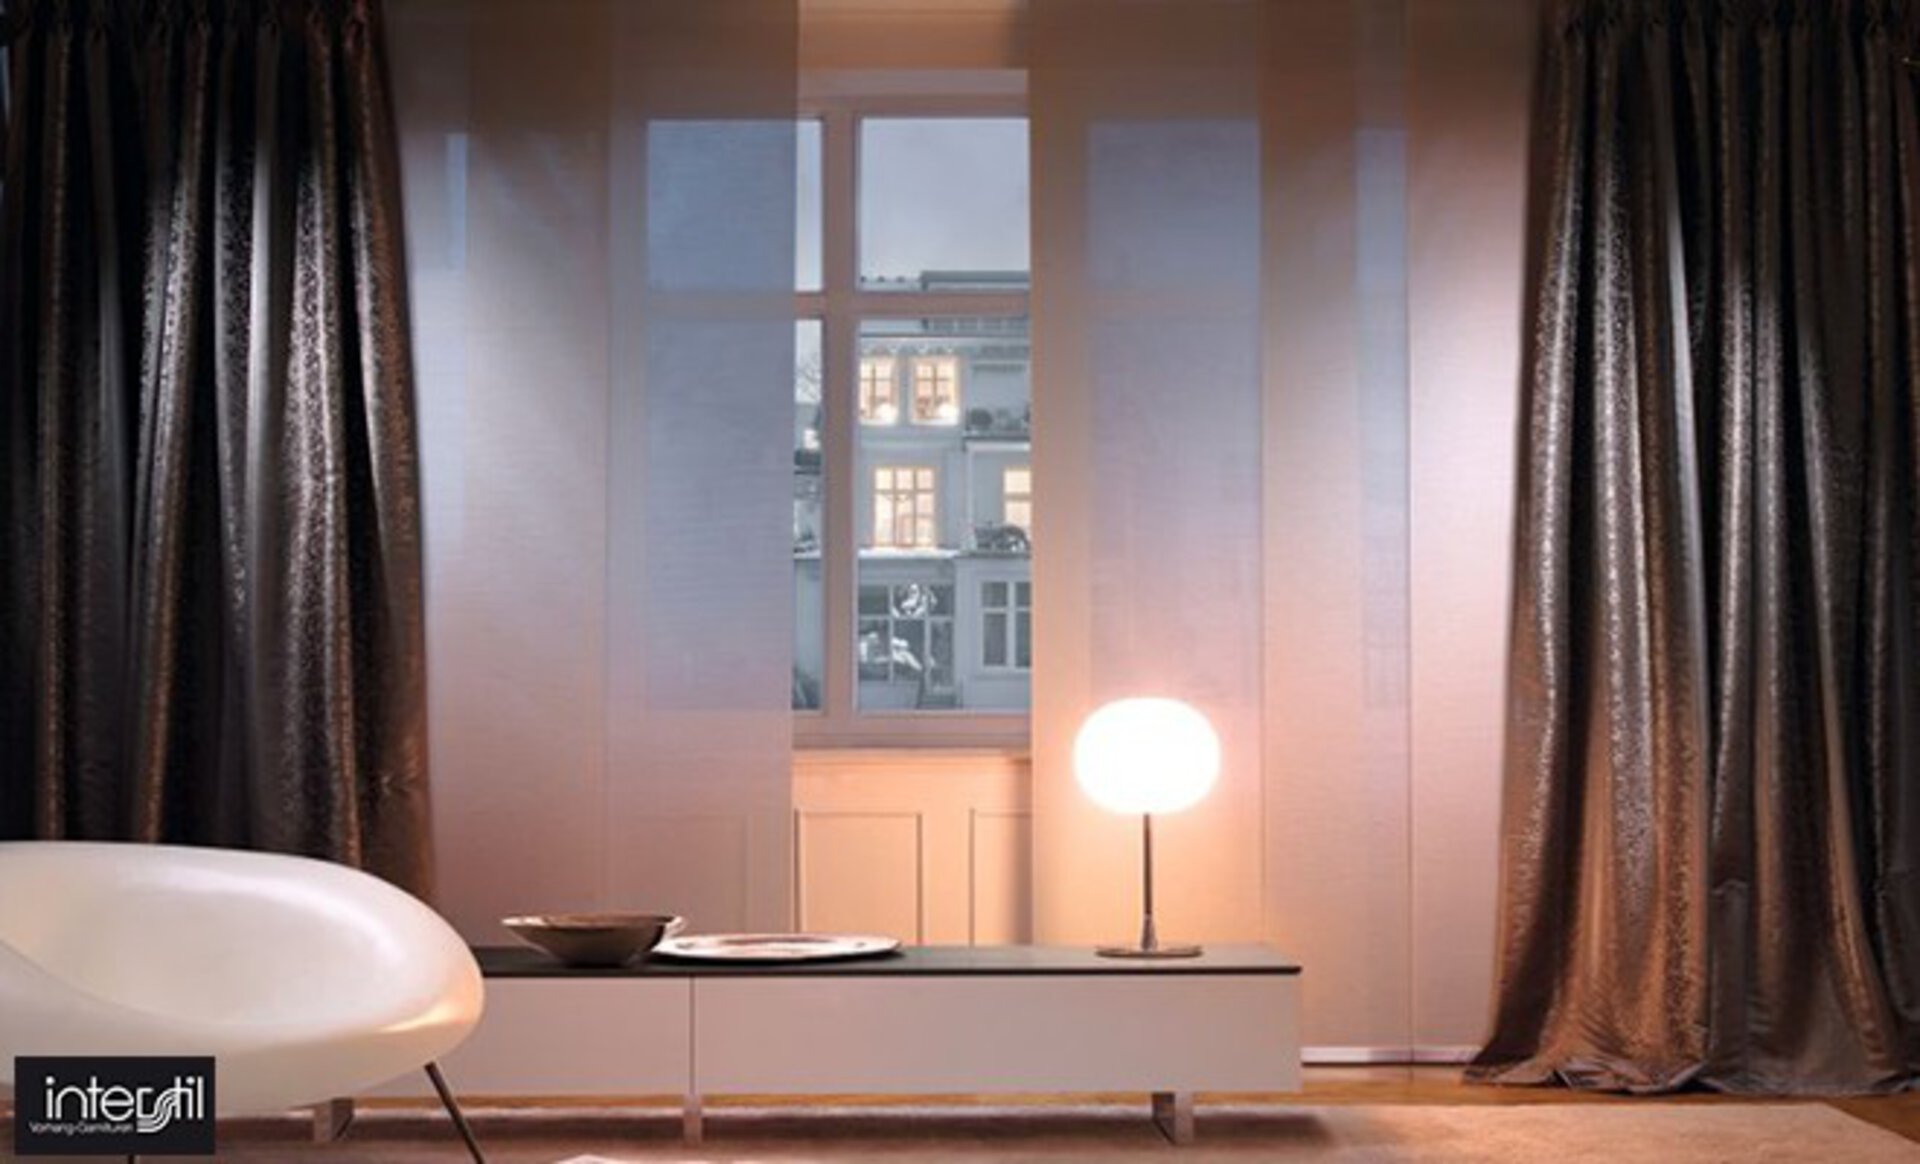 Titelbild zur Designmarke Interstil Vorhang-Garnituren bei interni by inhofer